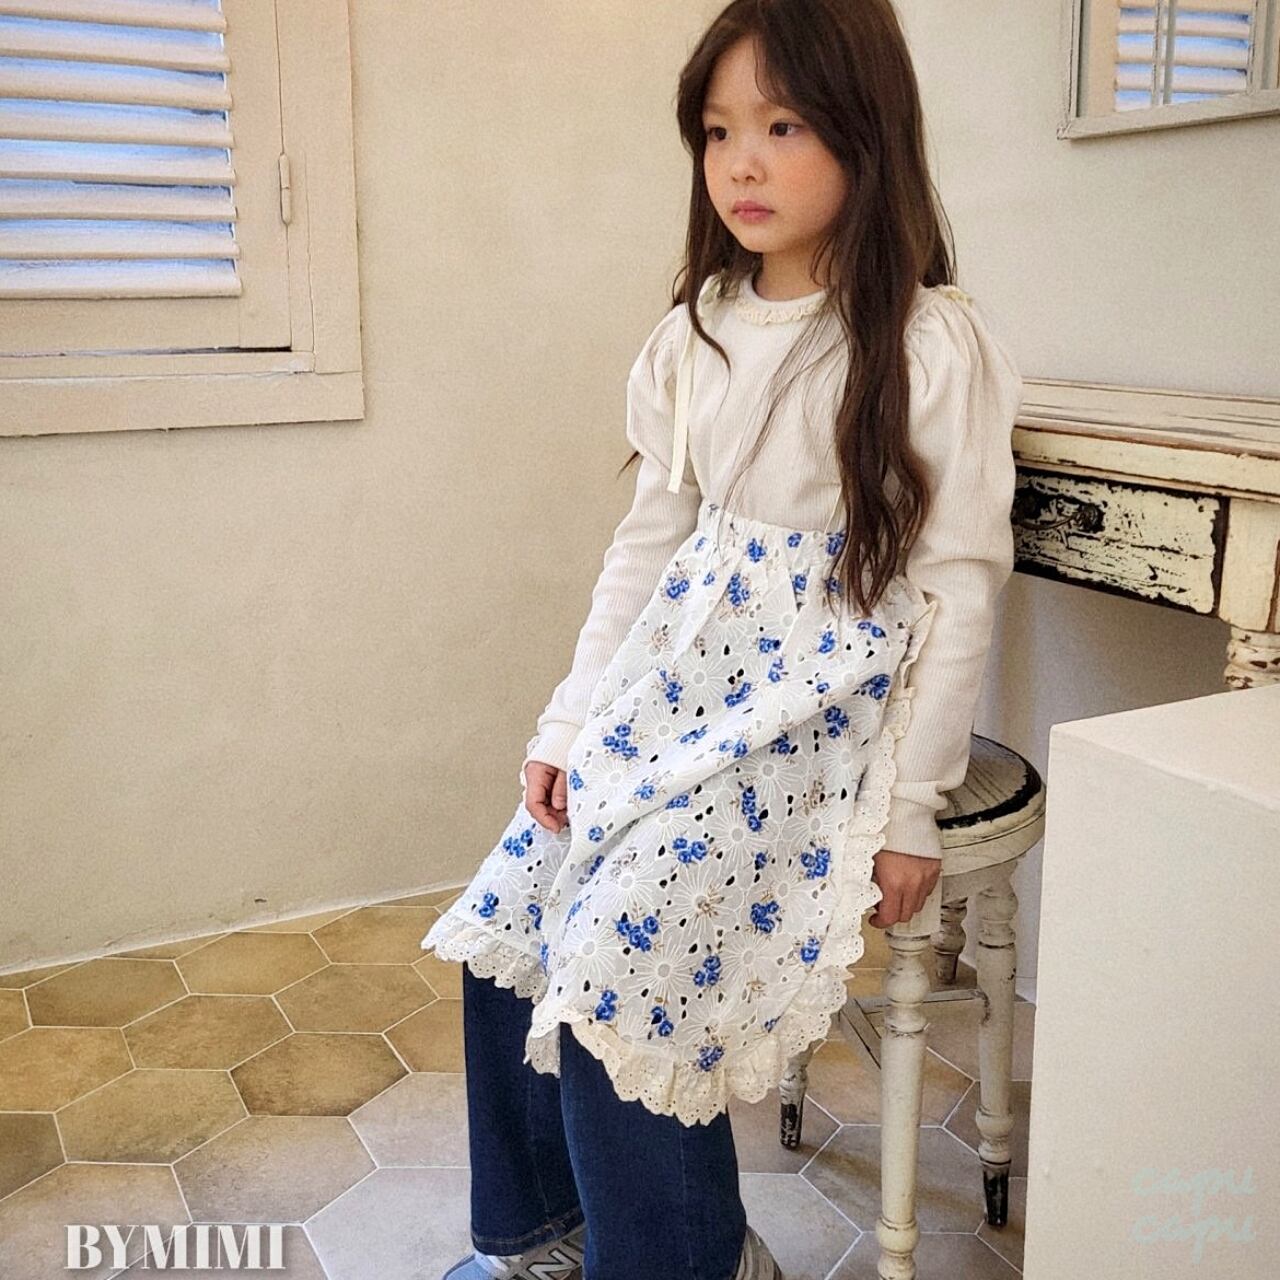 «予約»«ジュニアサイズあり» By MiMi レイヤードスカート 2colors